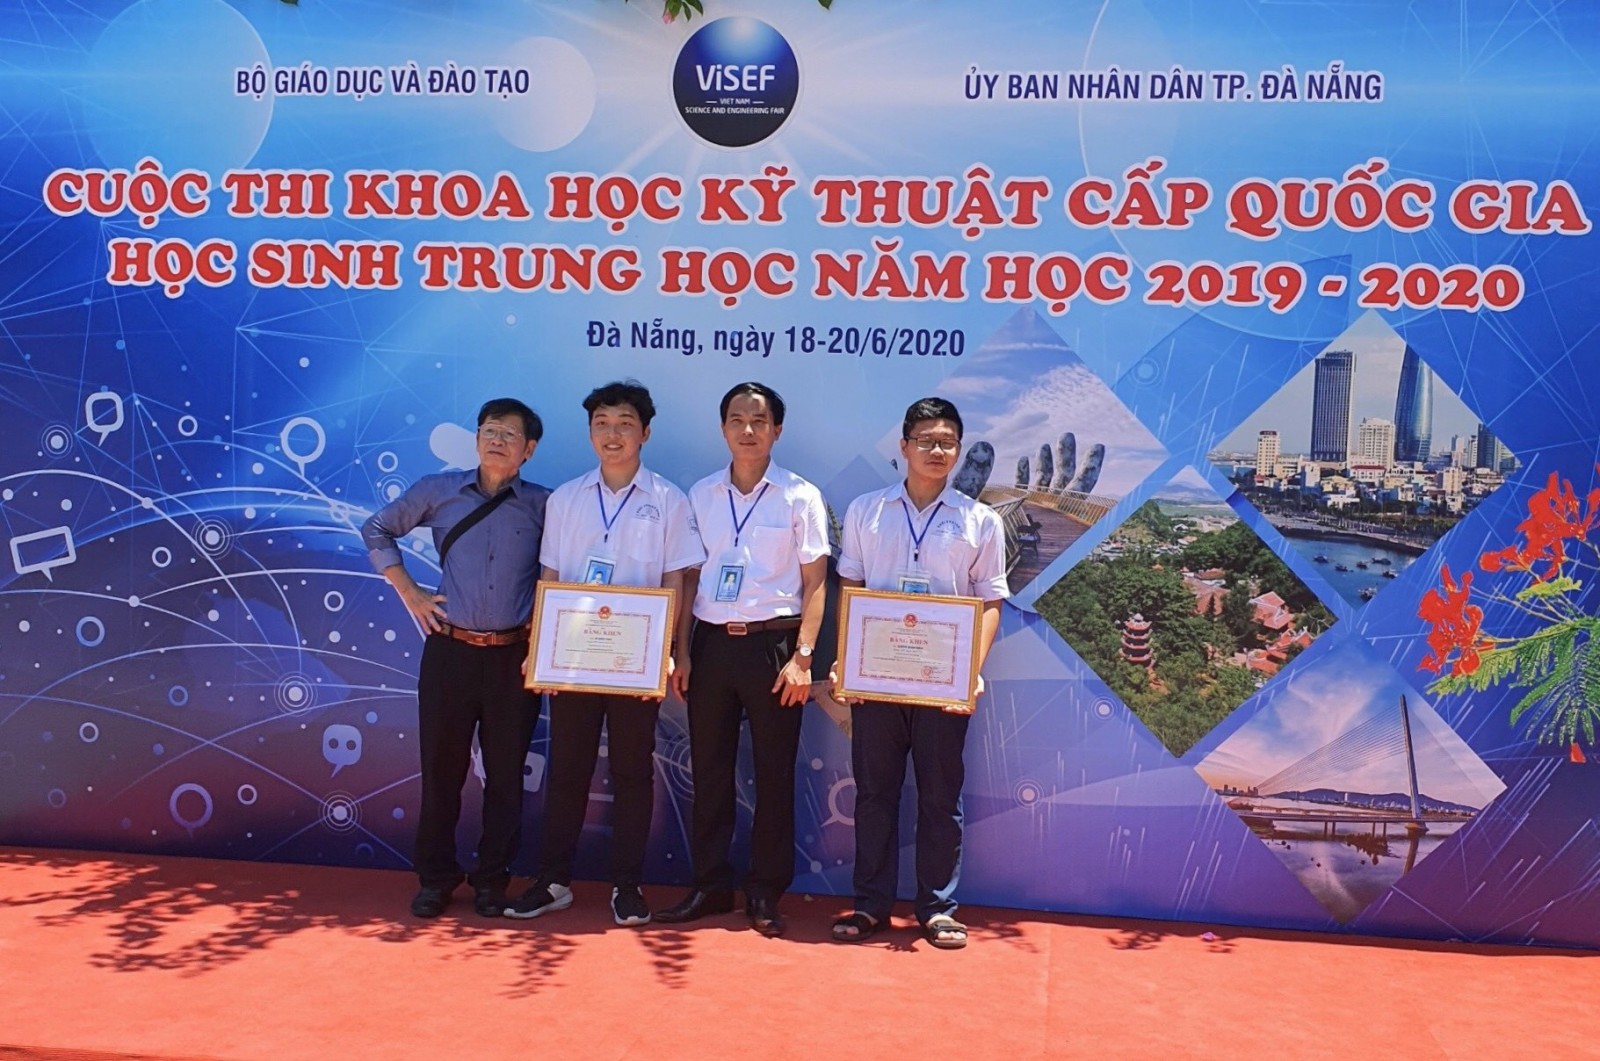 Chuyên Nguyễn Trãi xuất sắc giành giải Nhất cuộc thi Khoa học kỹ thuật cấp Quốc gia học sinh trung học năm học 2019 - 2020